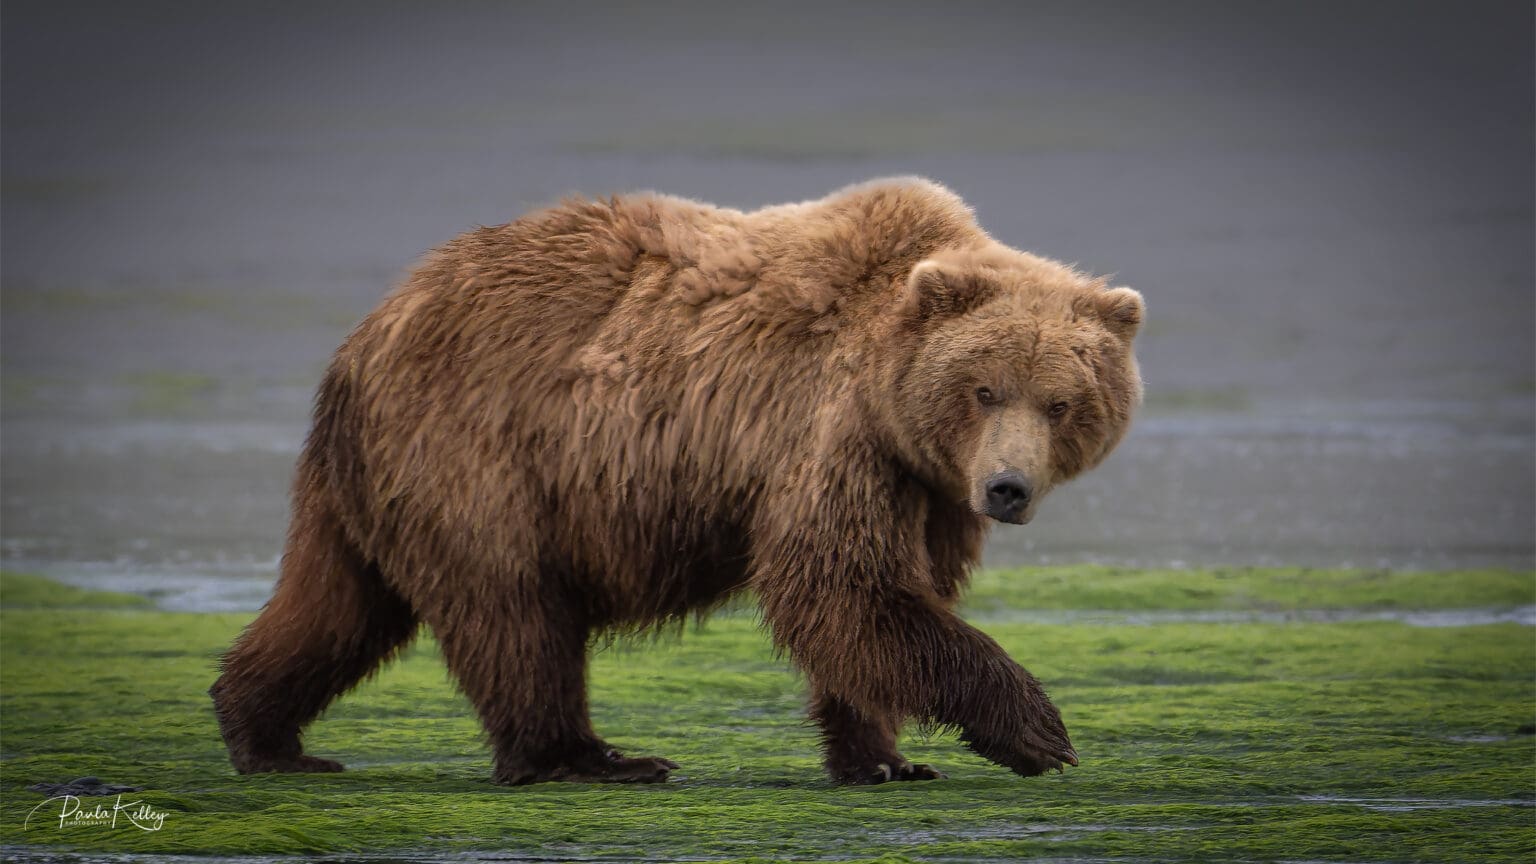 Paula Kelley's "Alaskan Bear Glance" is a photo of a bear walking on grass.